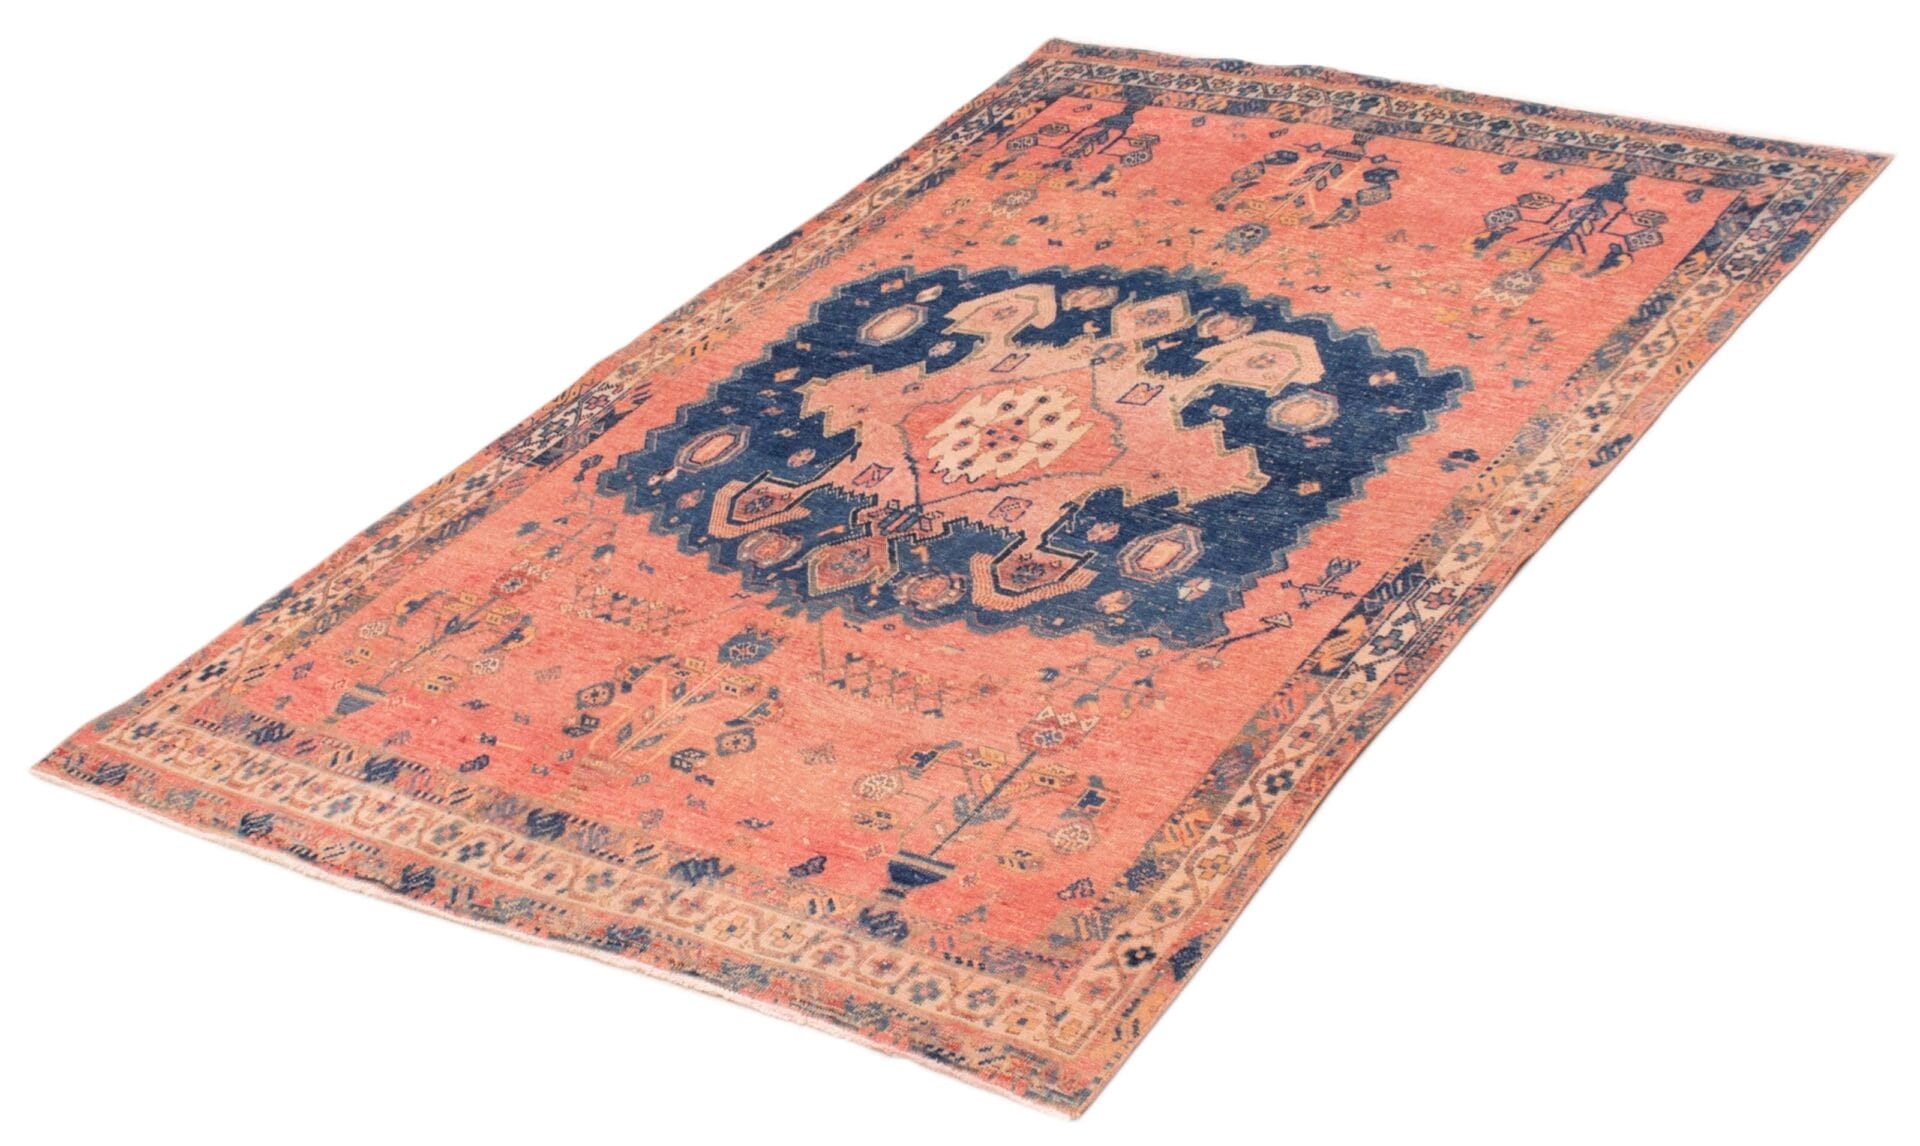 Beschrijving: Een roze en blauw tapijt met een subtiel ontwerp.